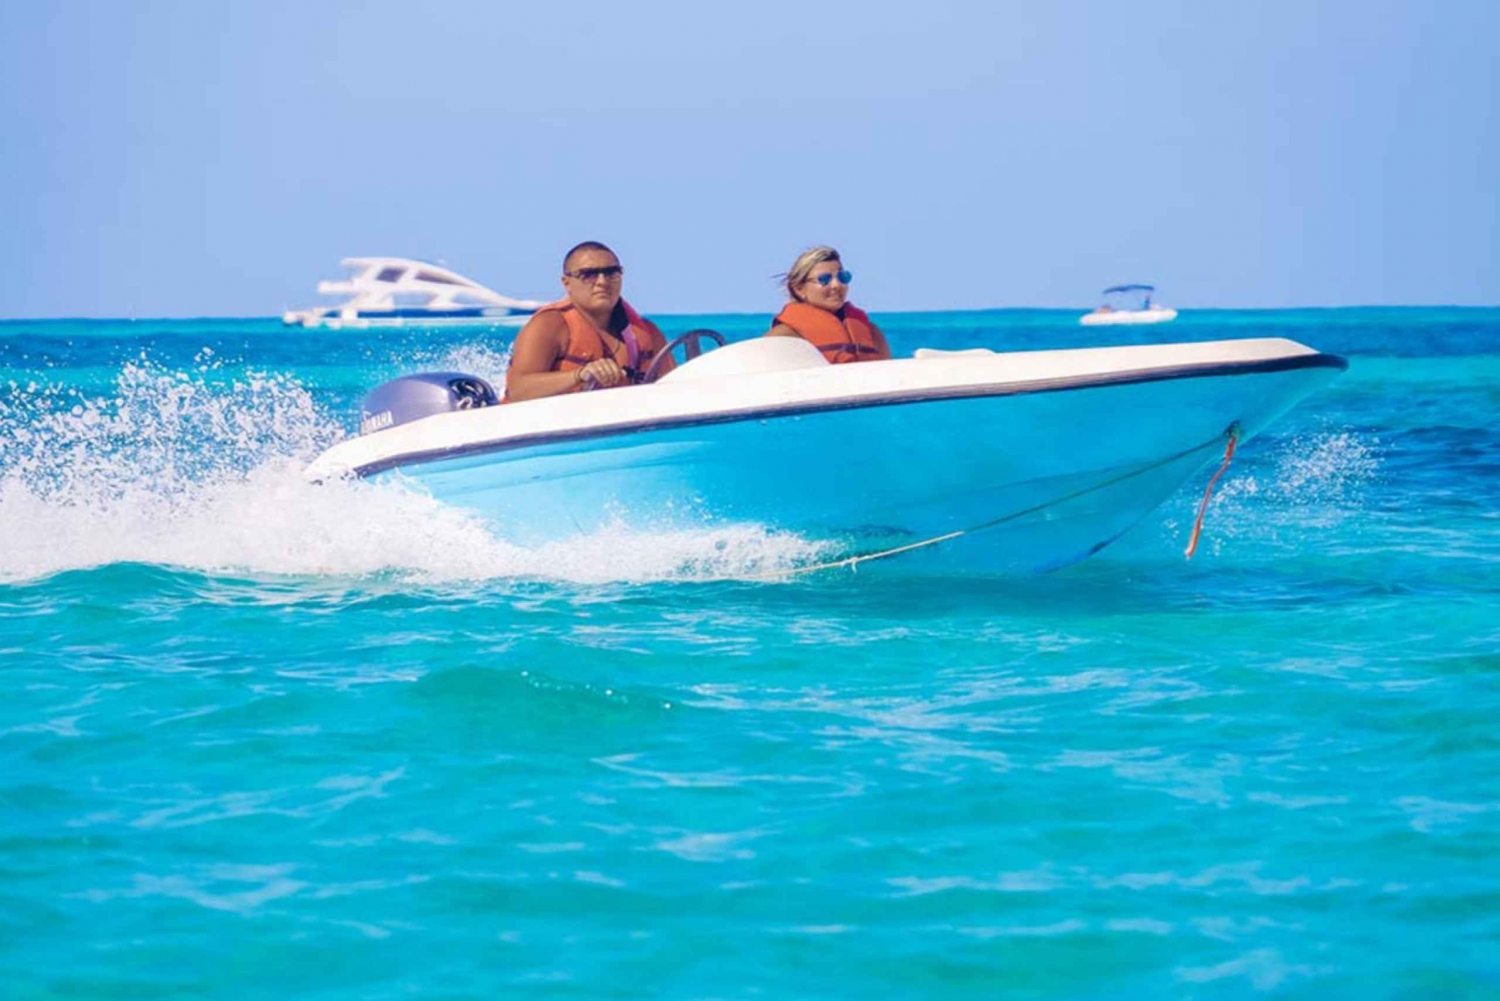 Experiencia en lancha rápida privada en Punta Cana con snorkel